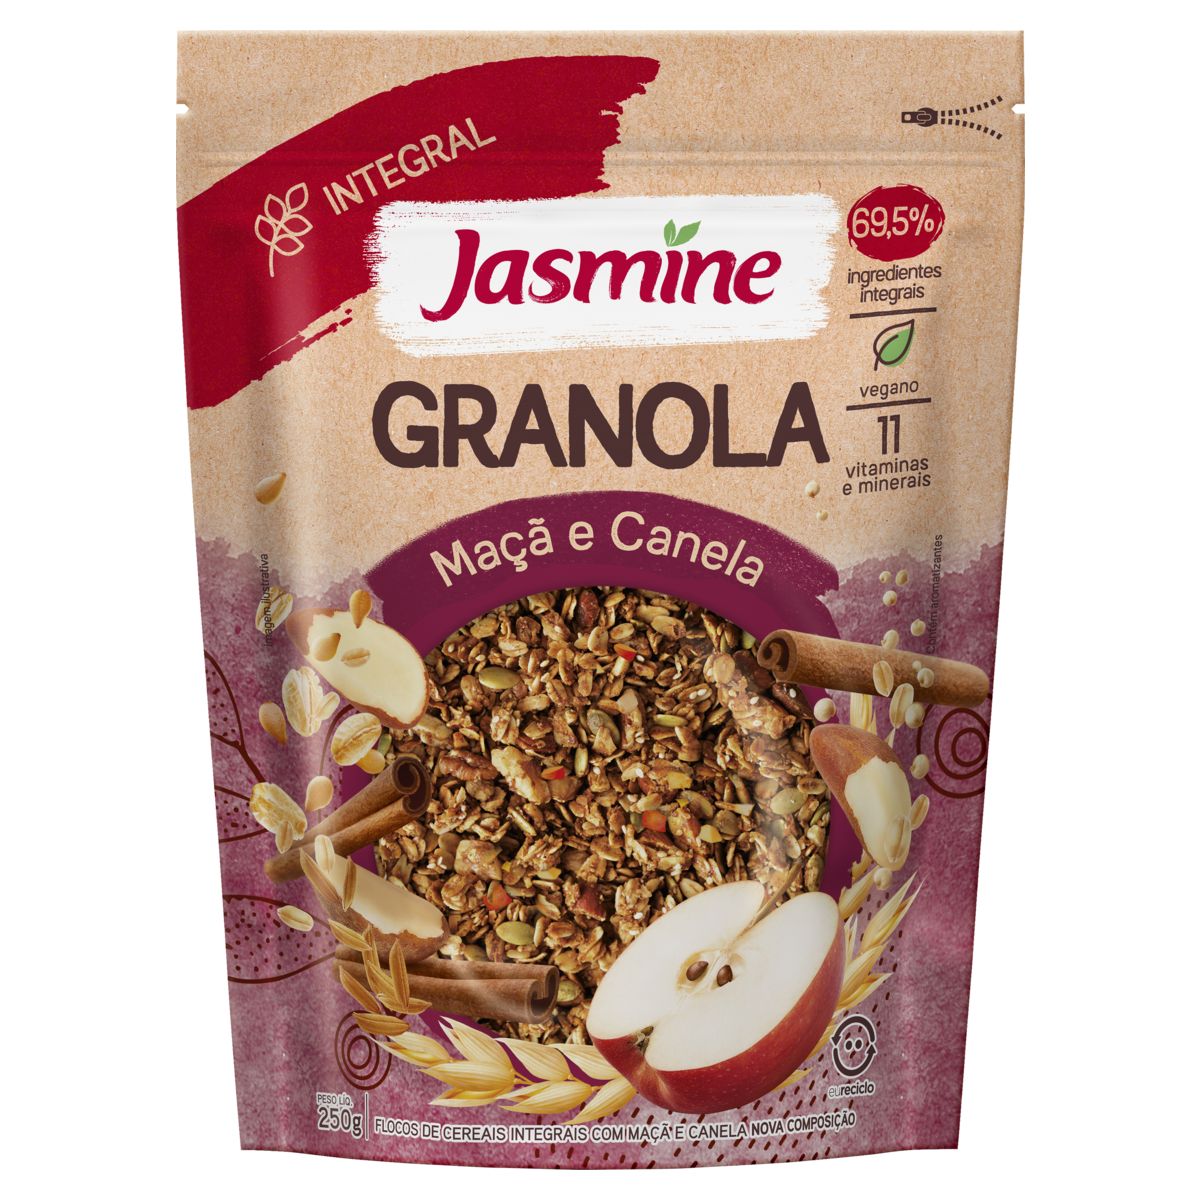 Granola Jasmine Maçã e Canela 69,5% Integral Pouch 250g